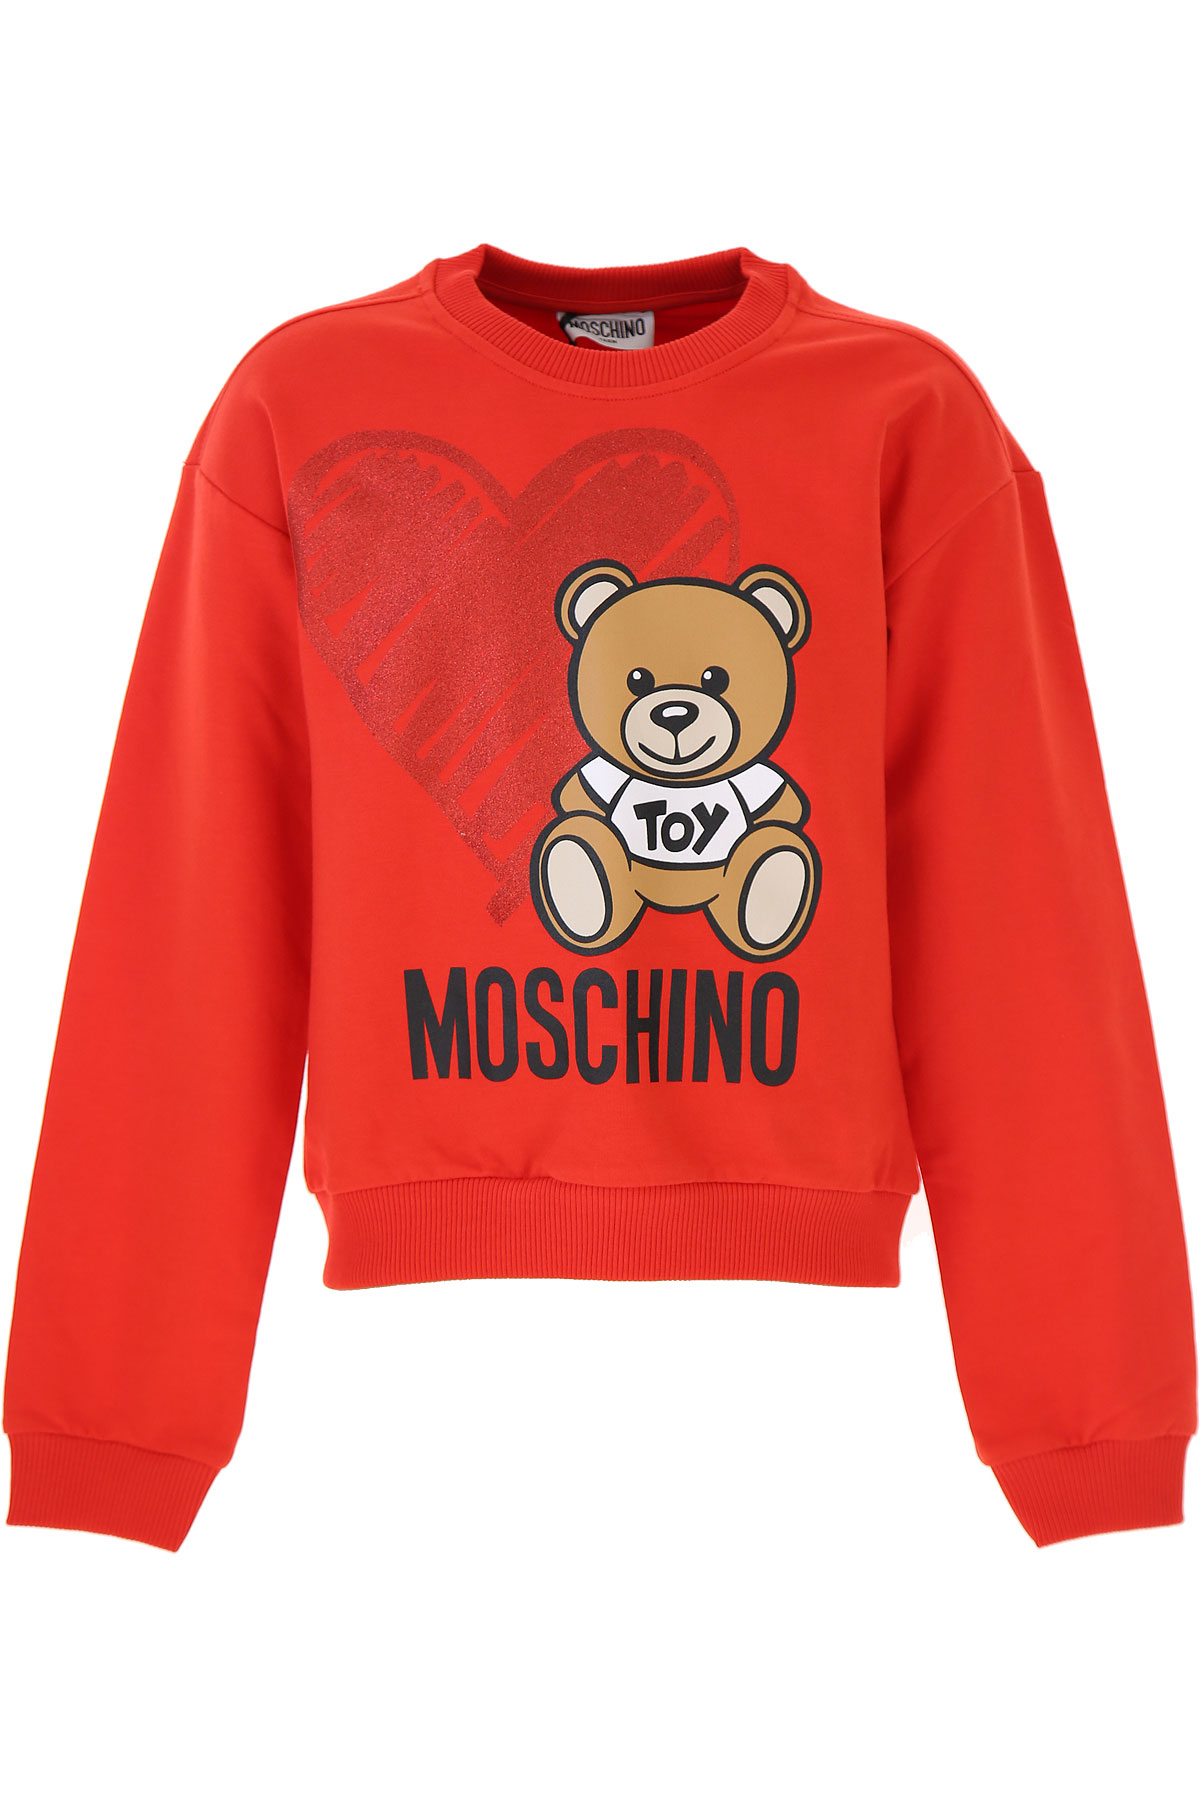 Moschino Kinder Sweatshirt & Kapuzenpullover für Mädchen Günstig im Sale, Rot, Baumwolle, 2017, 10Y 12Y 4Y 5Y